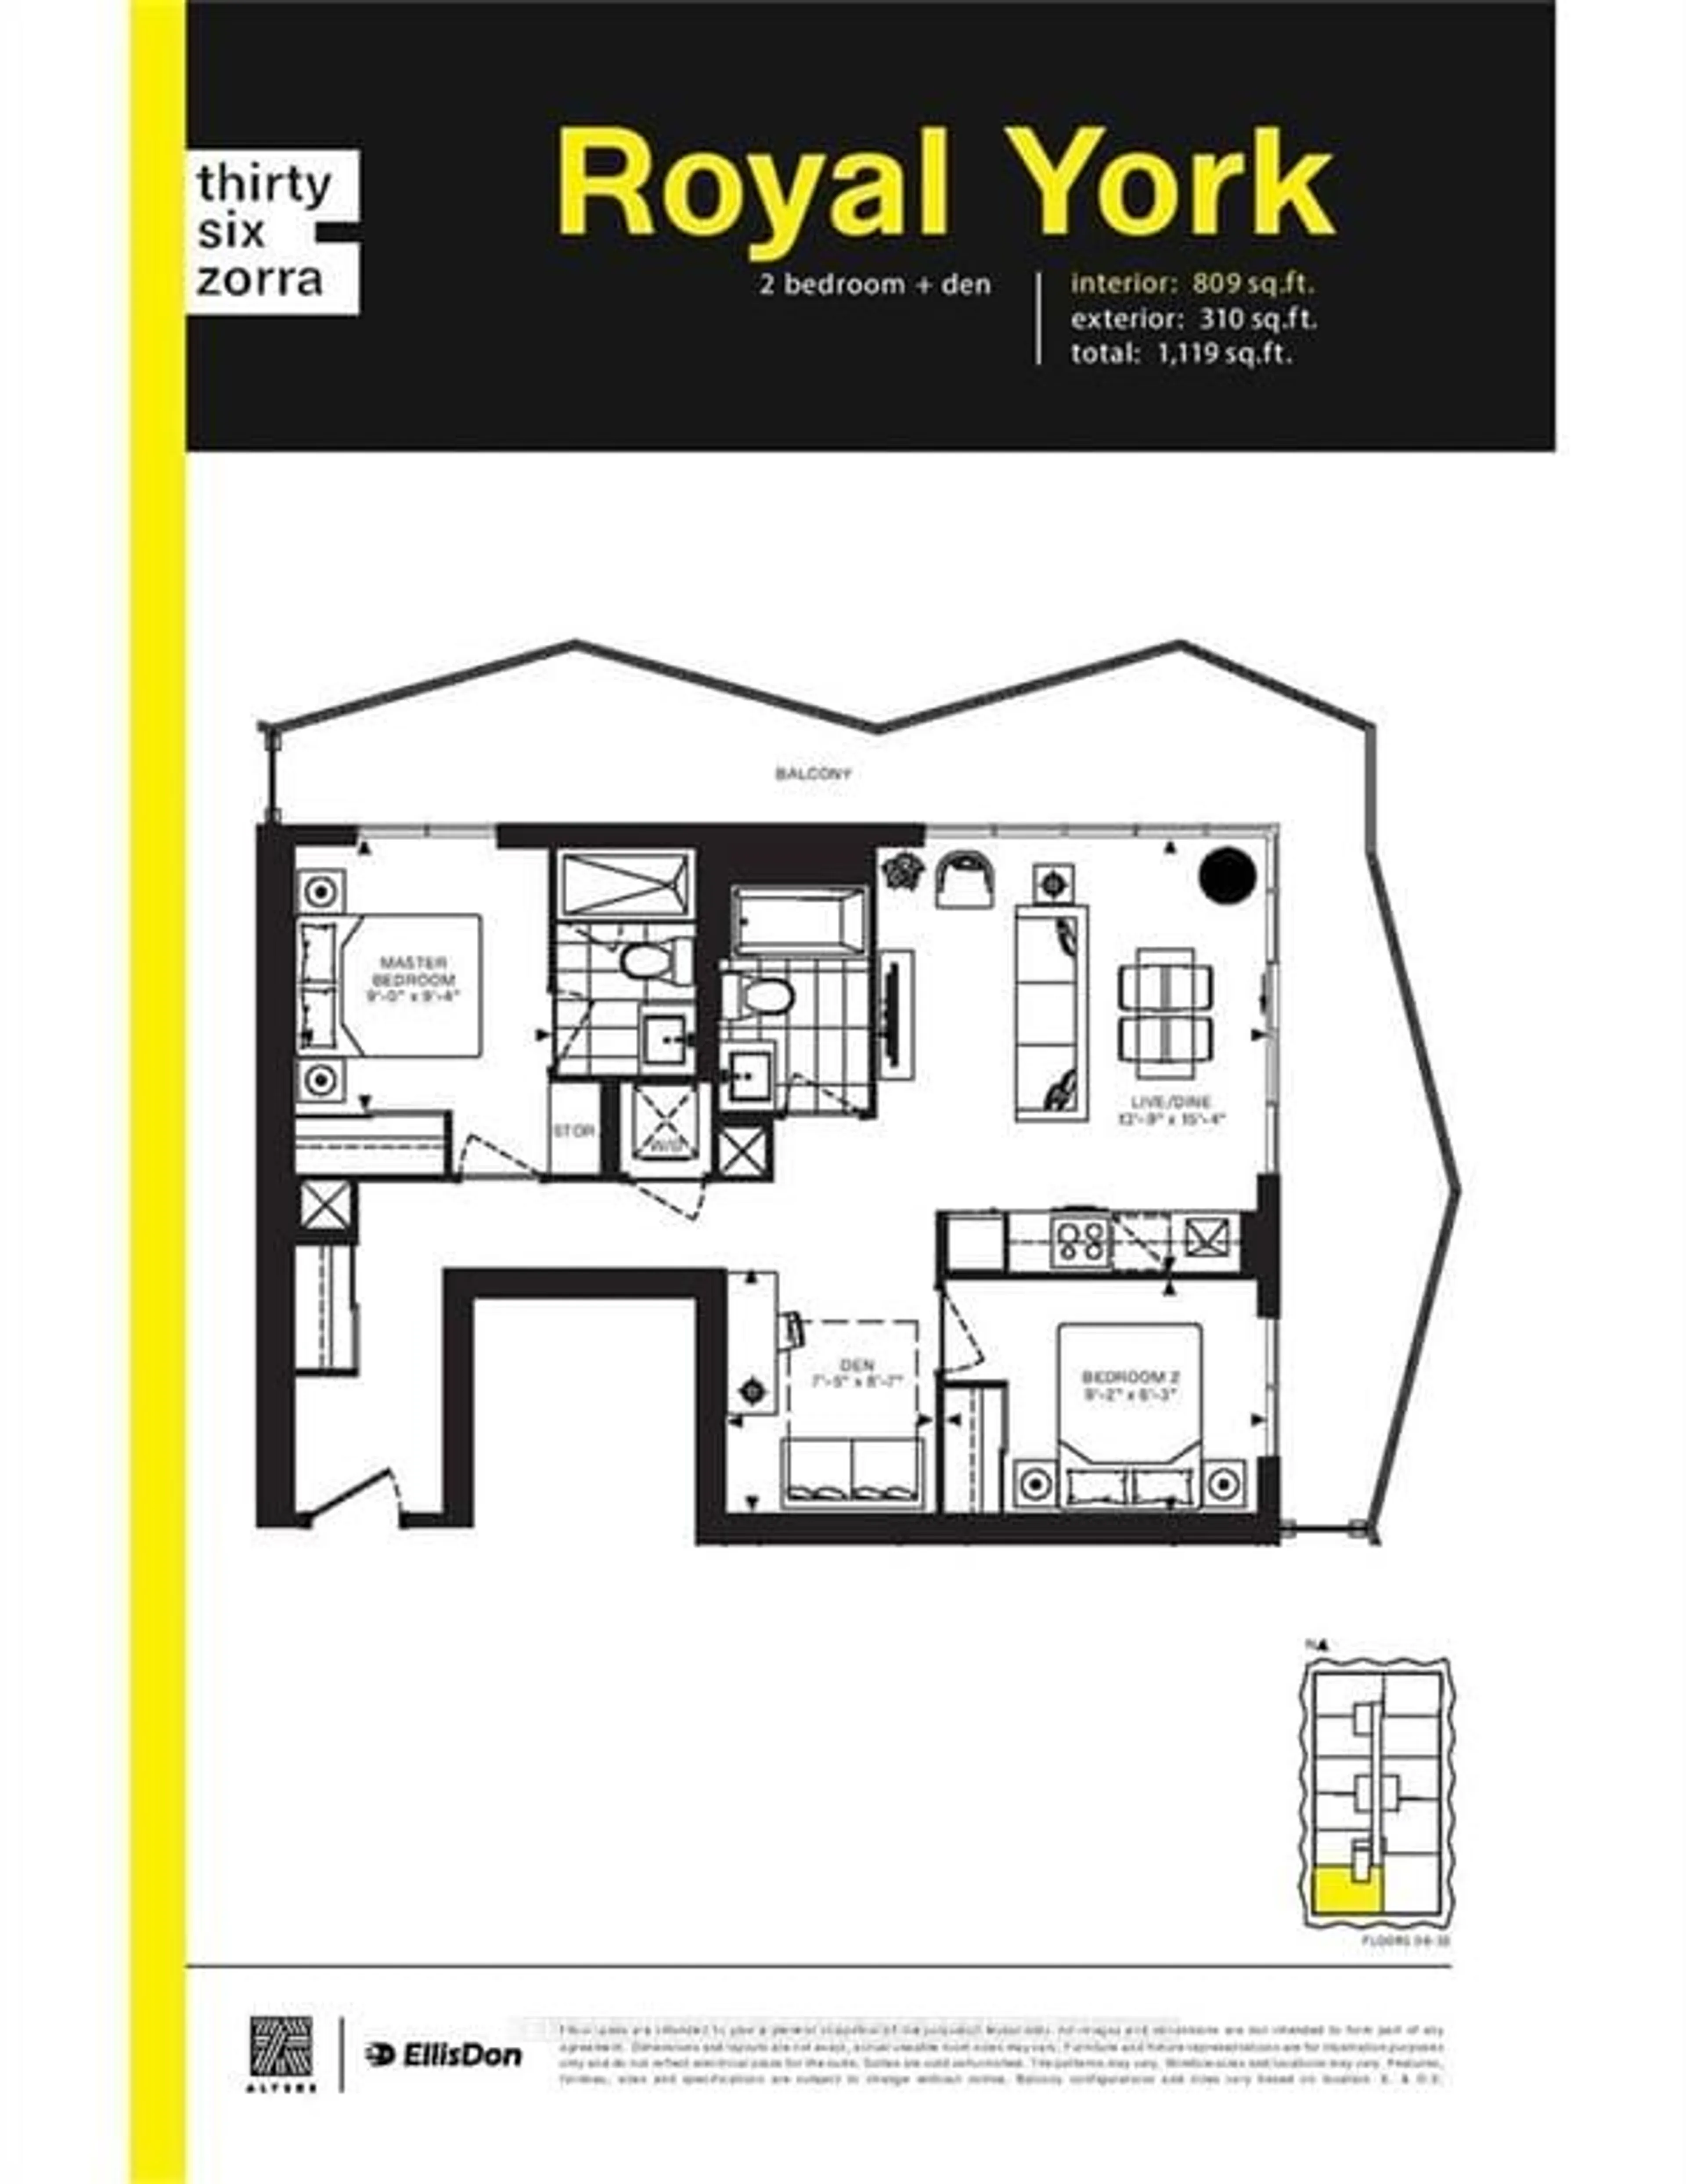 Floor plan for 36 Zorra St #1509, Toronto Ontario M8Z 0G5